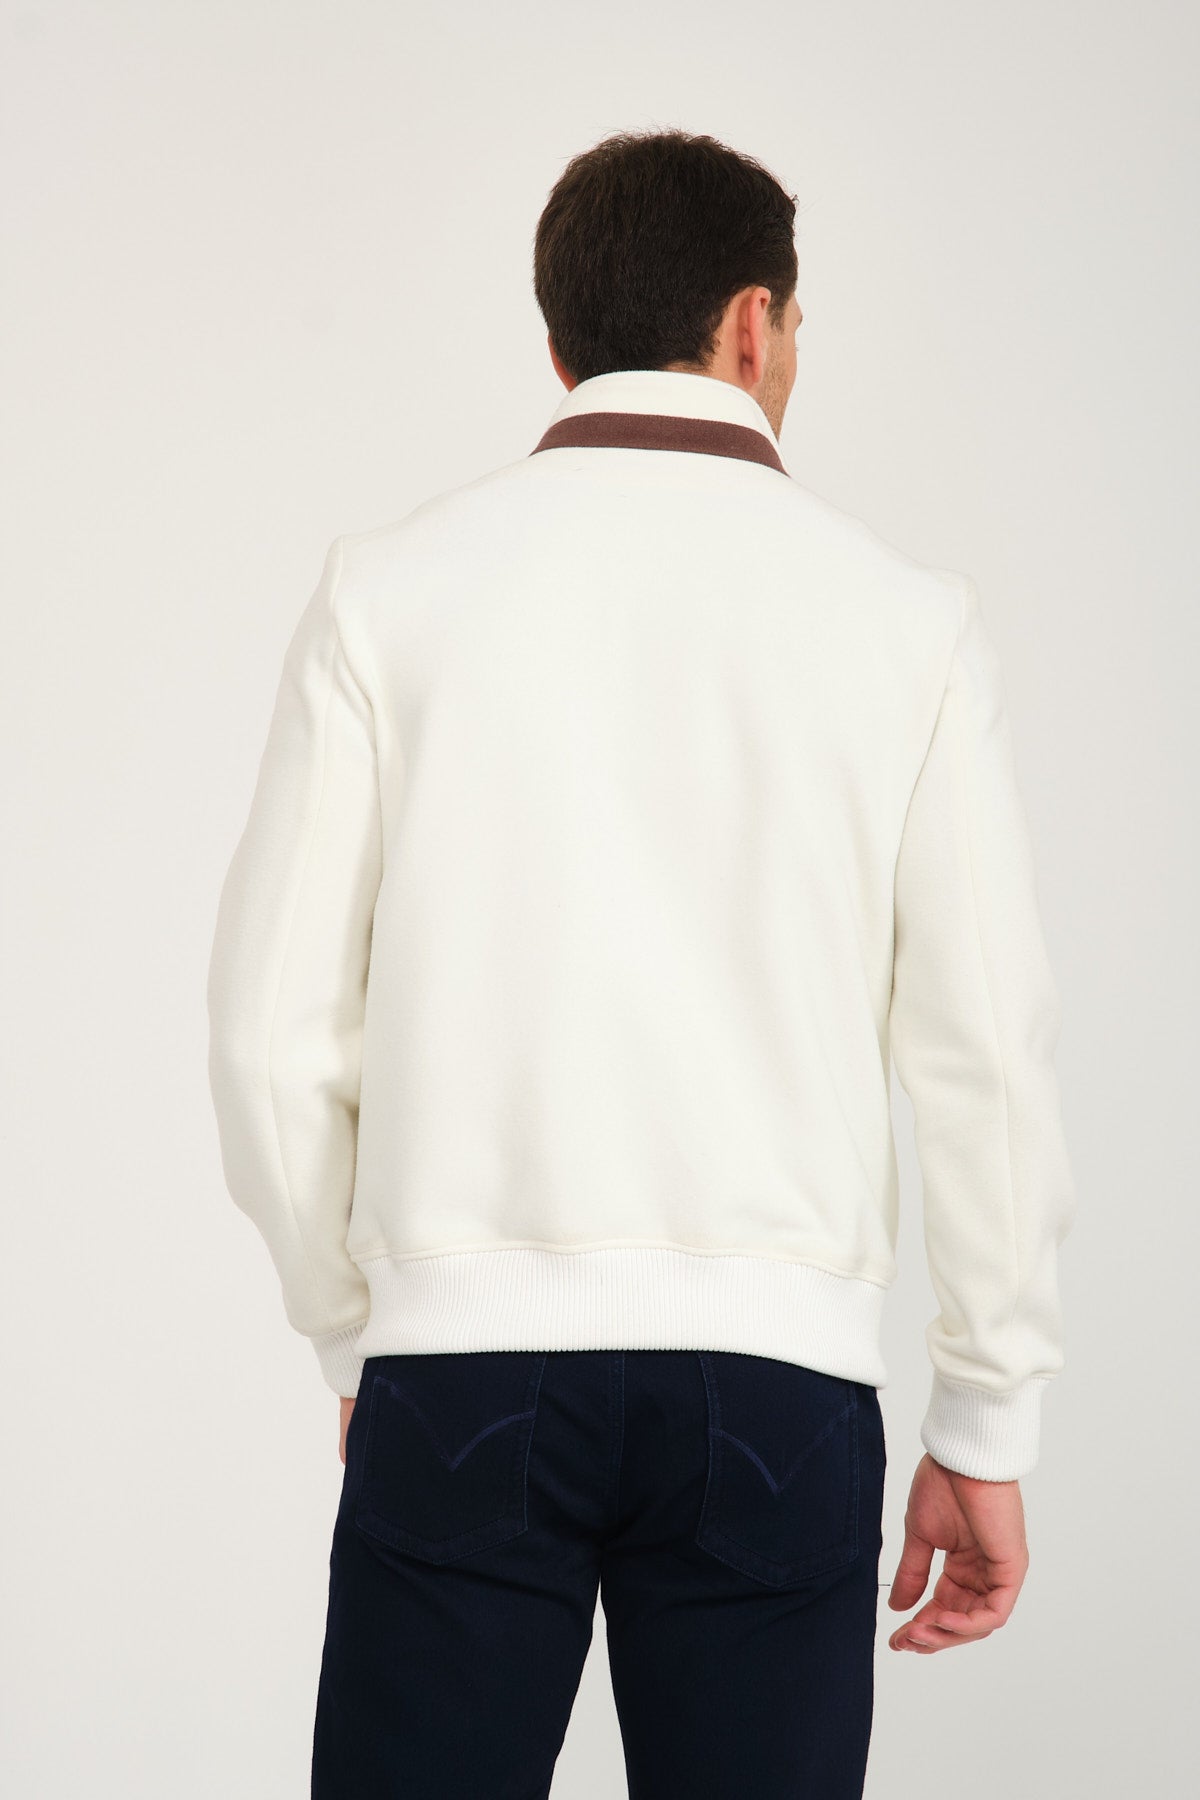 White Wool Jacket